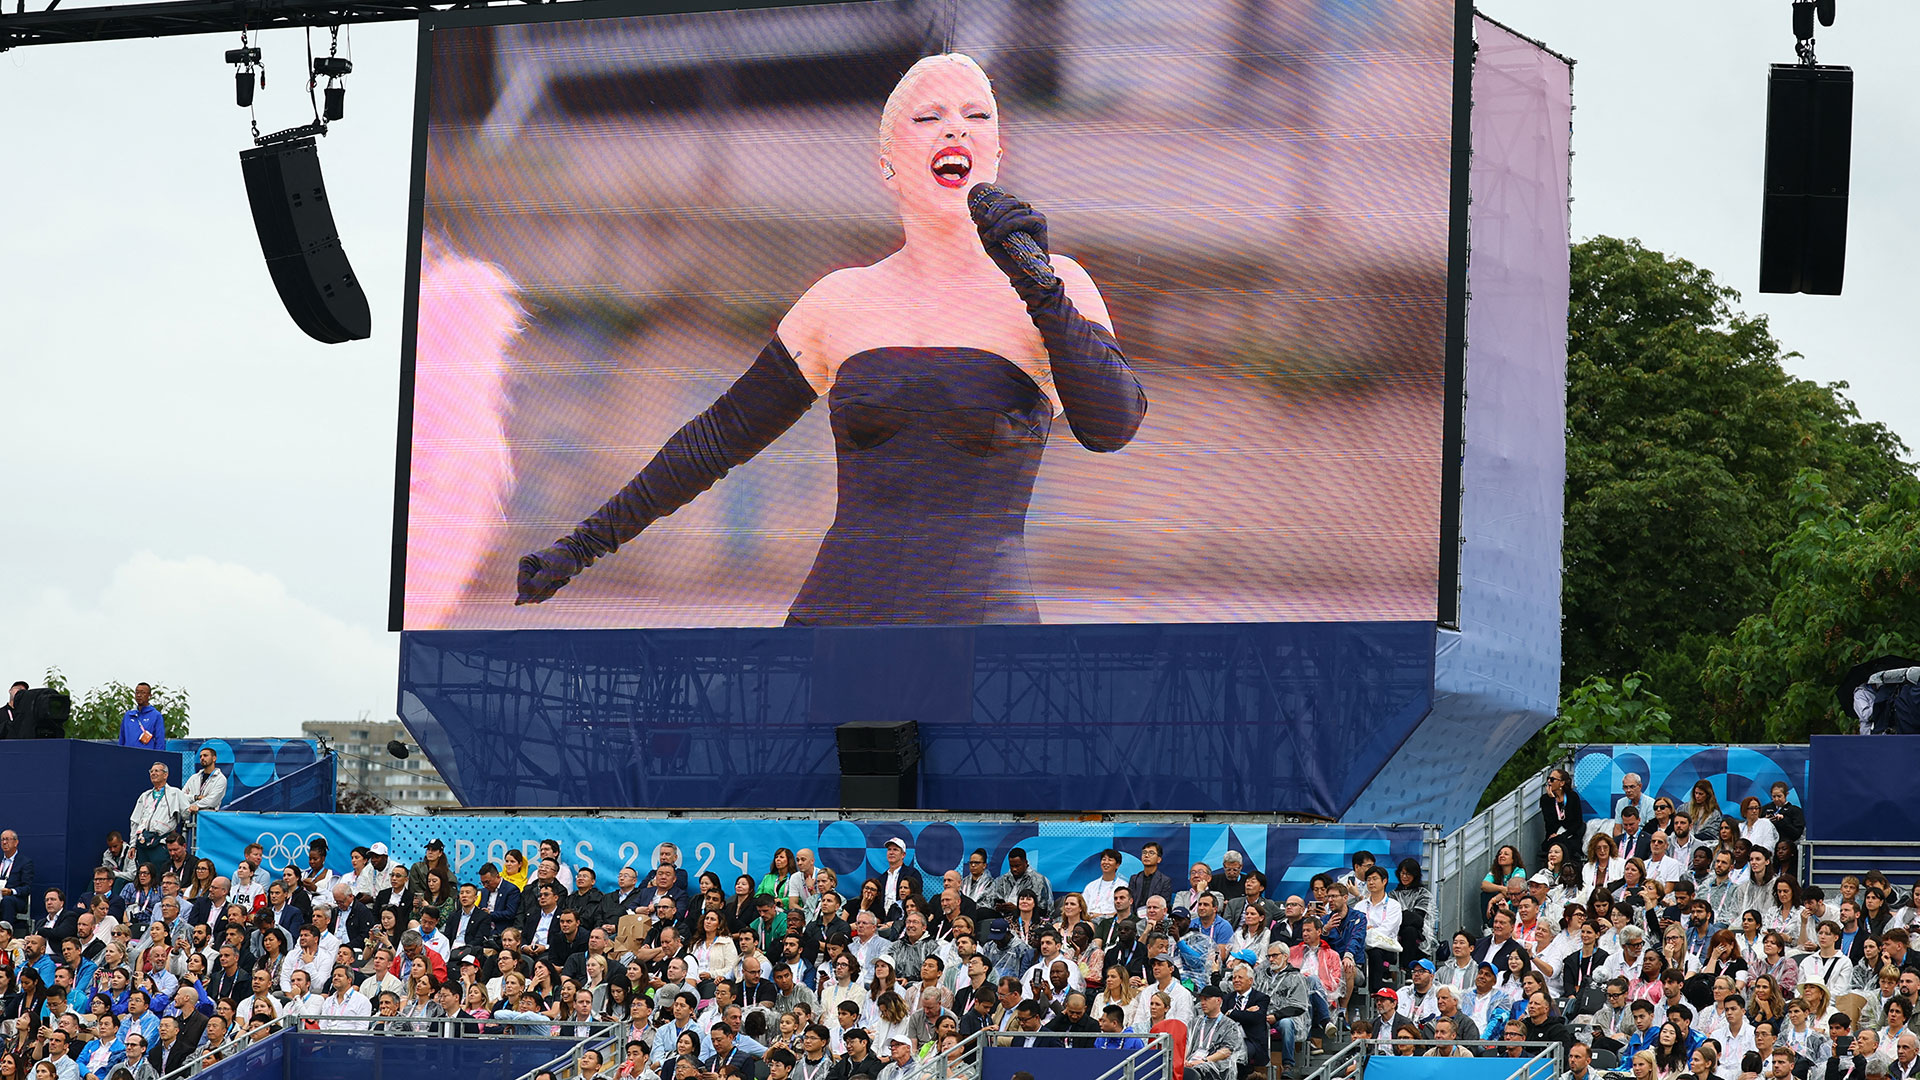 Ολυμπιακοί Αγώνες: Μοναδική εμφάνιση από τη Lady Gaga, μέταλ και όπερα με φόντο τη Γαλλική Επανάσταση